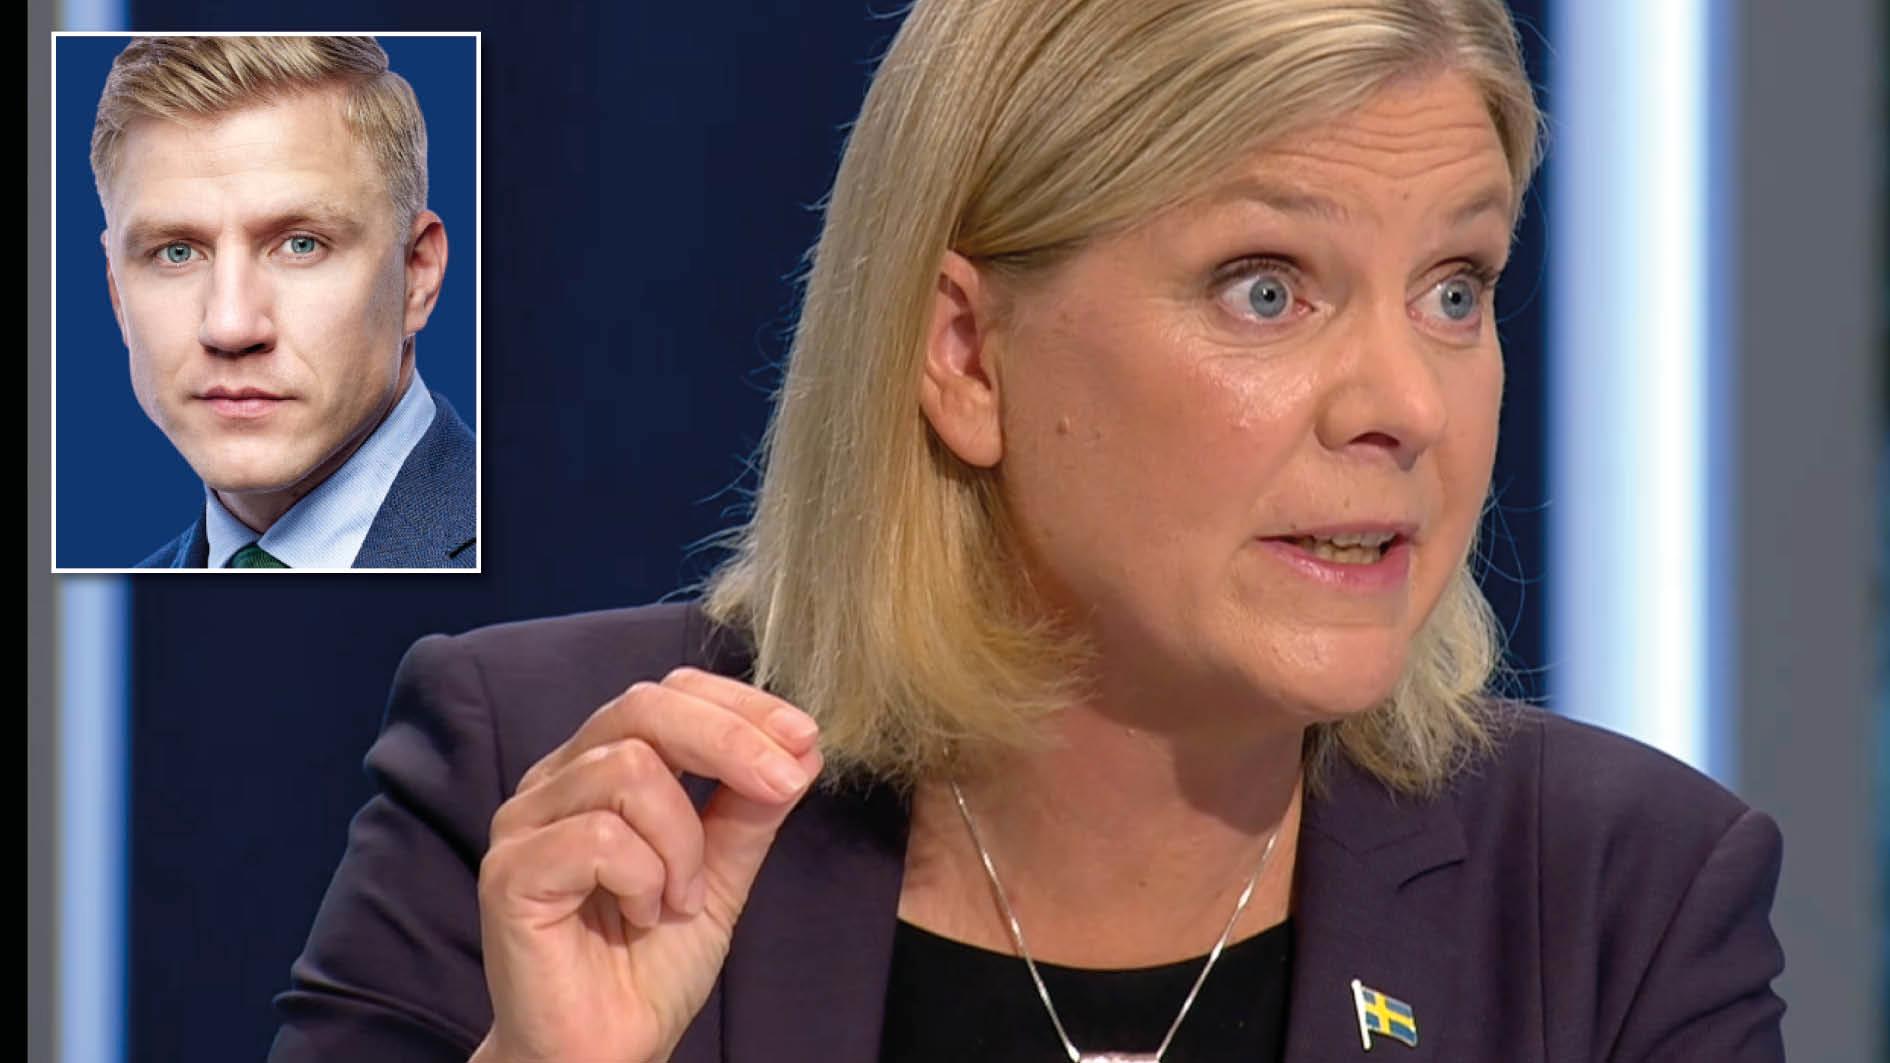 Det kändes som en käftsmäll när jag i går hörde Sveriges statsminister sitta i SVT och skylla ifrån sig. Inte en gång tog Magdalena Andersson ansvar – allt är någon annans fel. Hon tycks inte förstå att medborgarnas säkerhet är statens ansvar, skriver Fredrik Kärrholm.